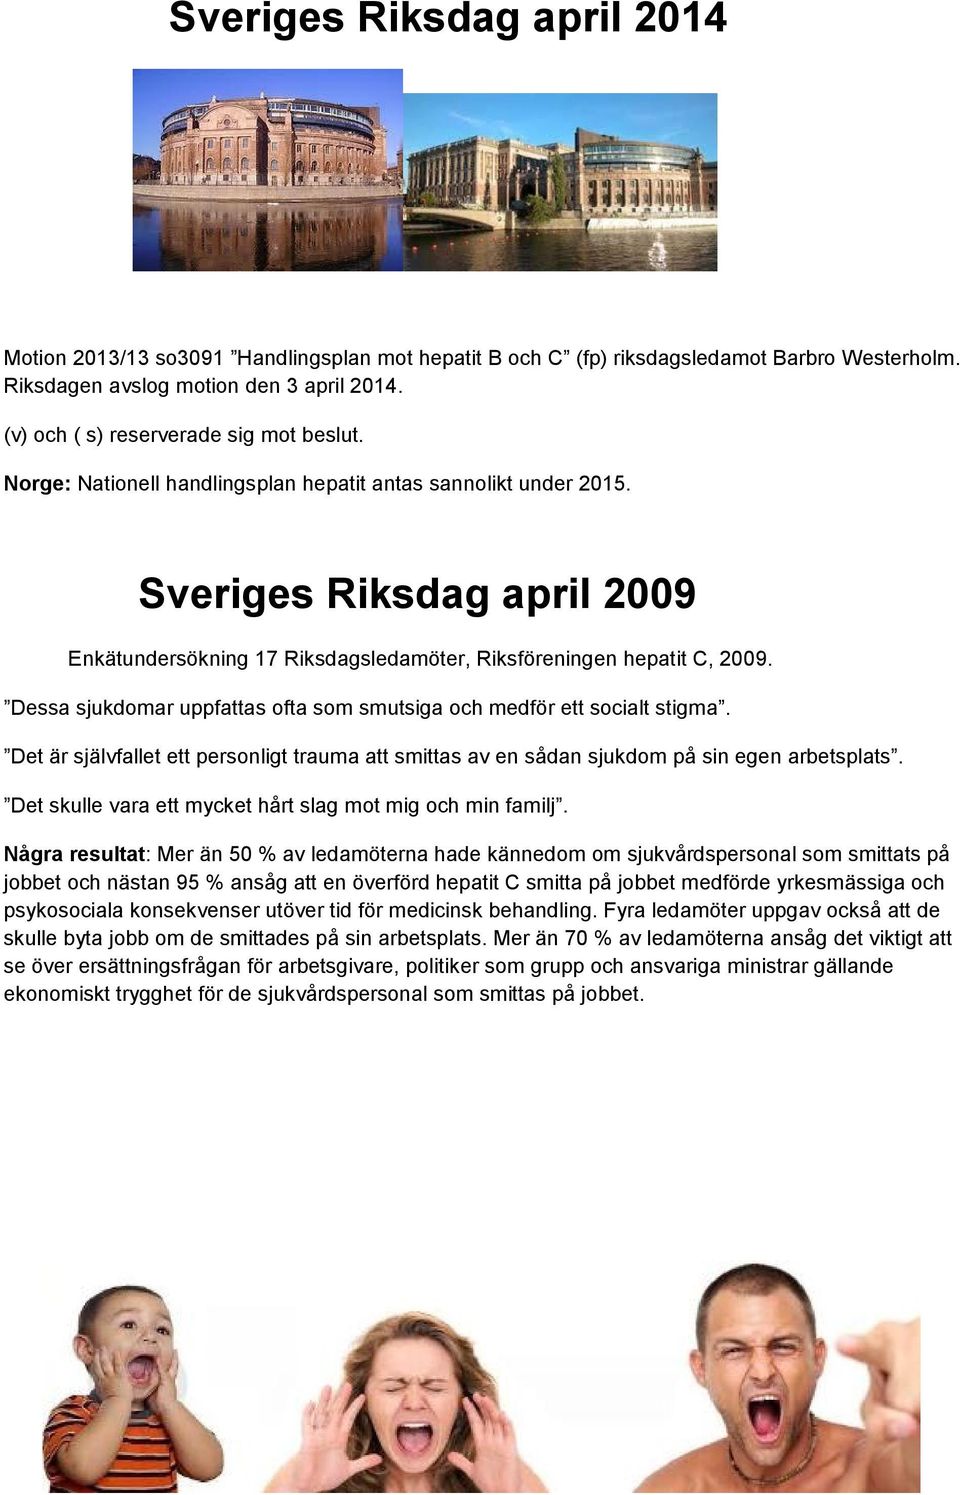 Sveriges Riksdag april 2009 Enkätundersökning 17 Riksdagsledamöter, Riksföreningen hepatit C, 2009. Dessa sjukdomar uppfattas ofta som smutsiga och medför ett socialt stigma.